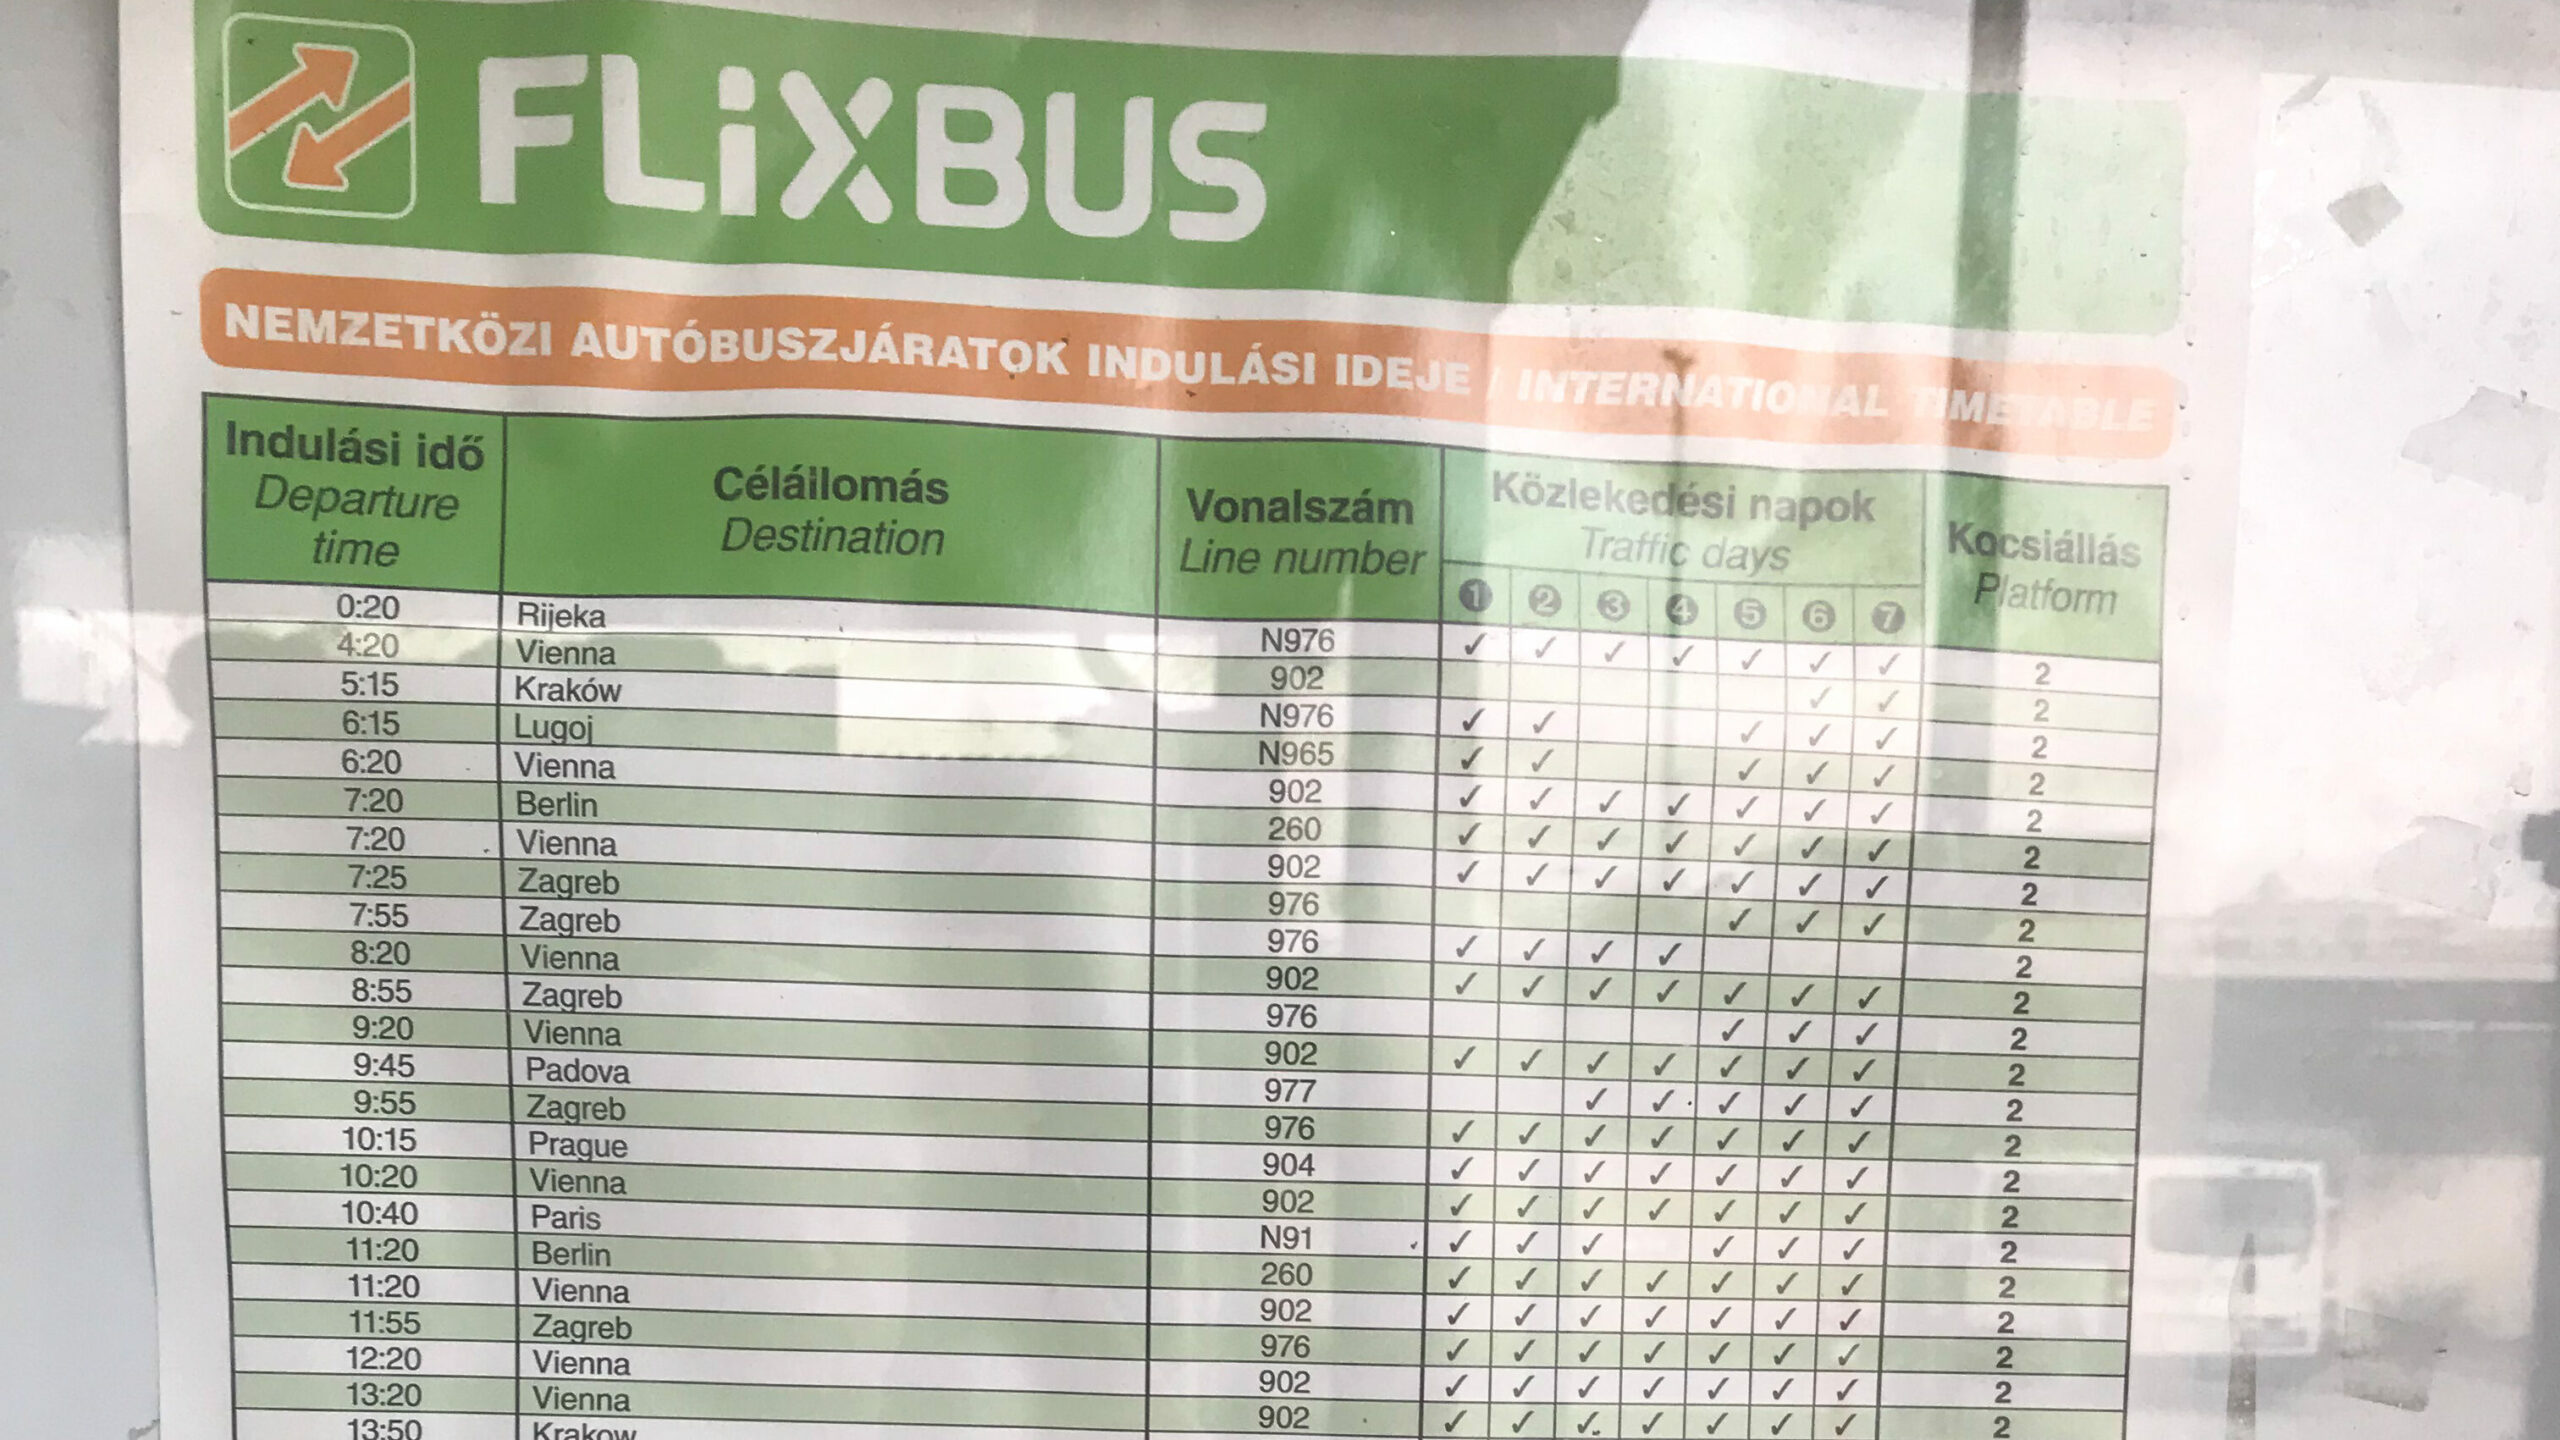 The schedule of Flixbus